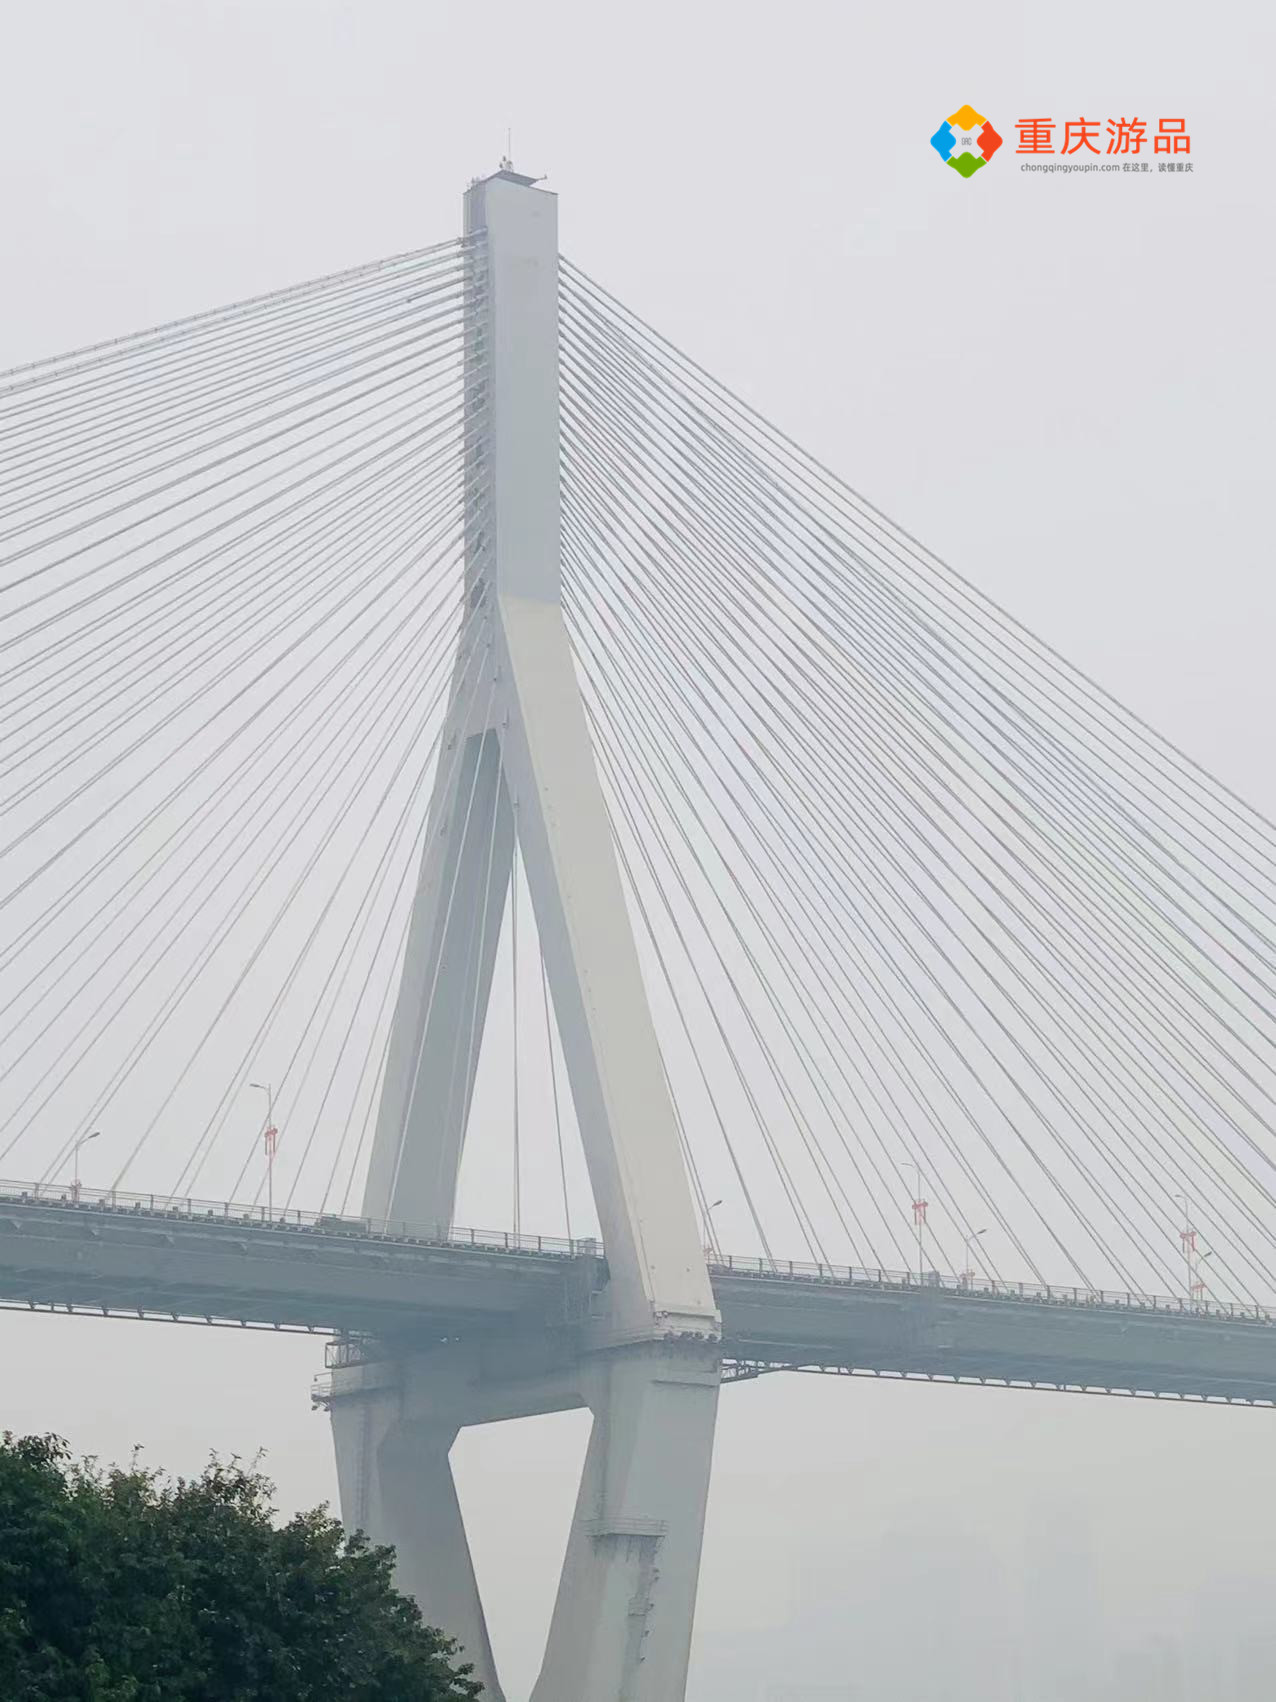 重庆居然还有这样的桥!马桑溪长江大桥,只看了一眼就被震撼到了